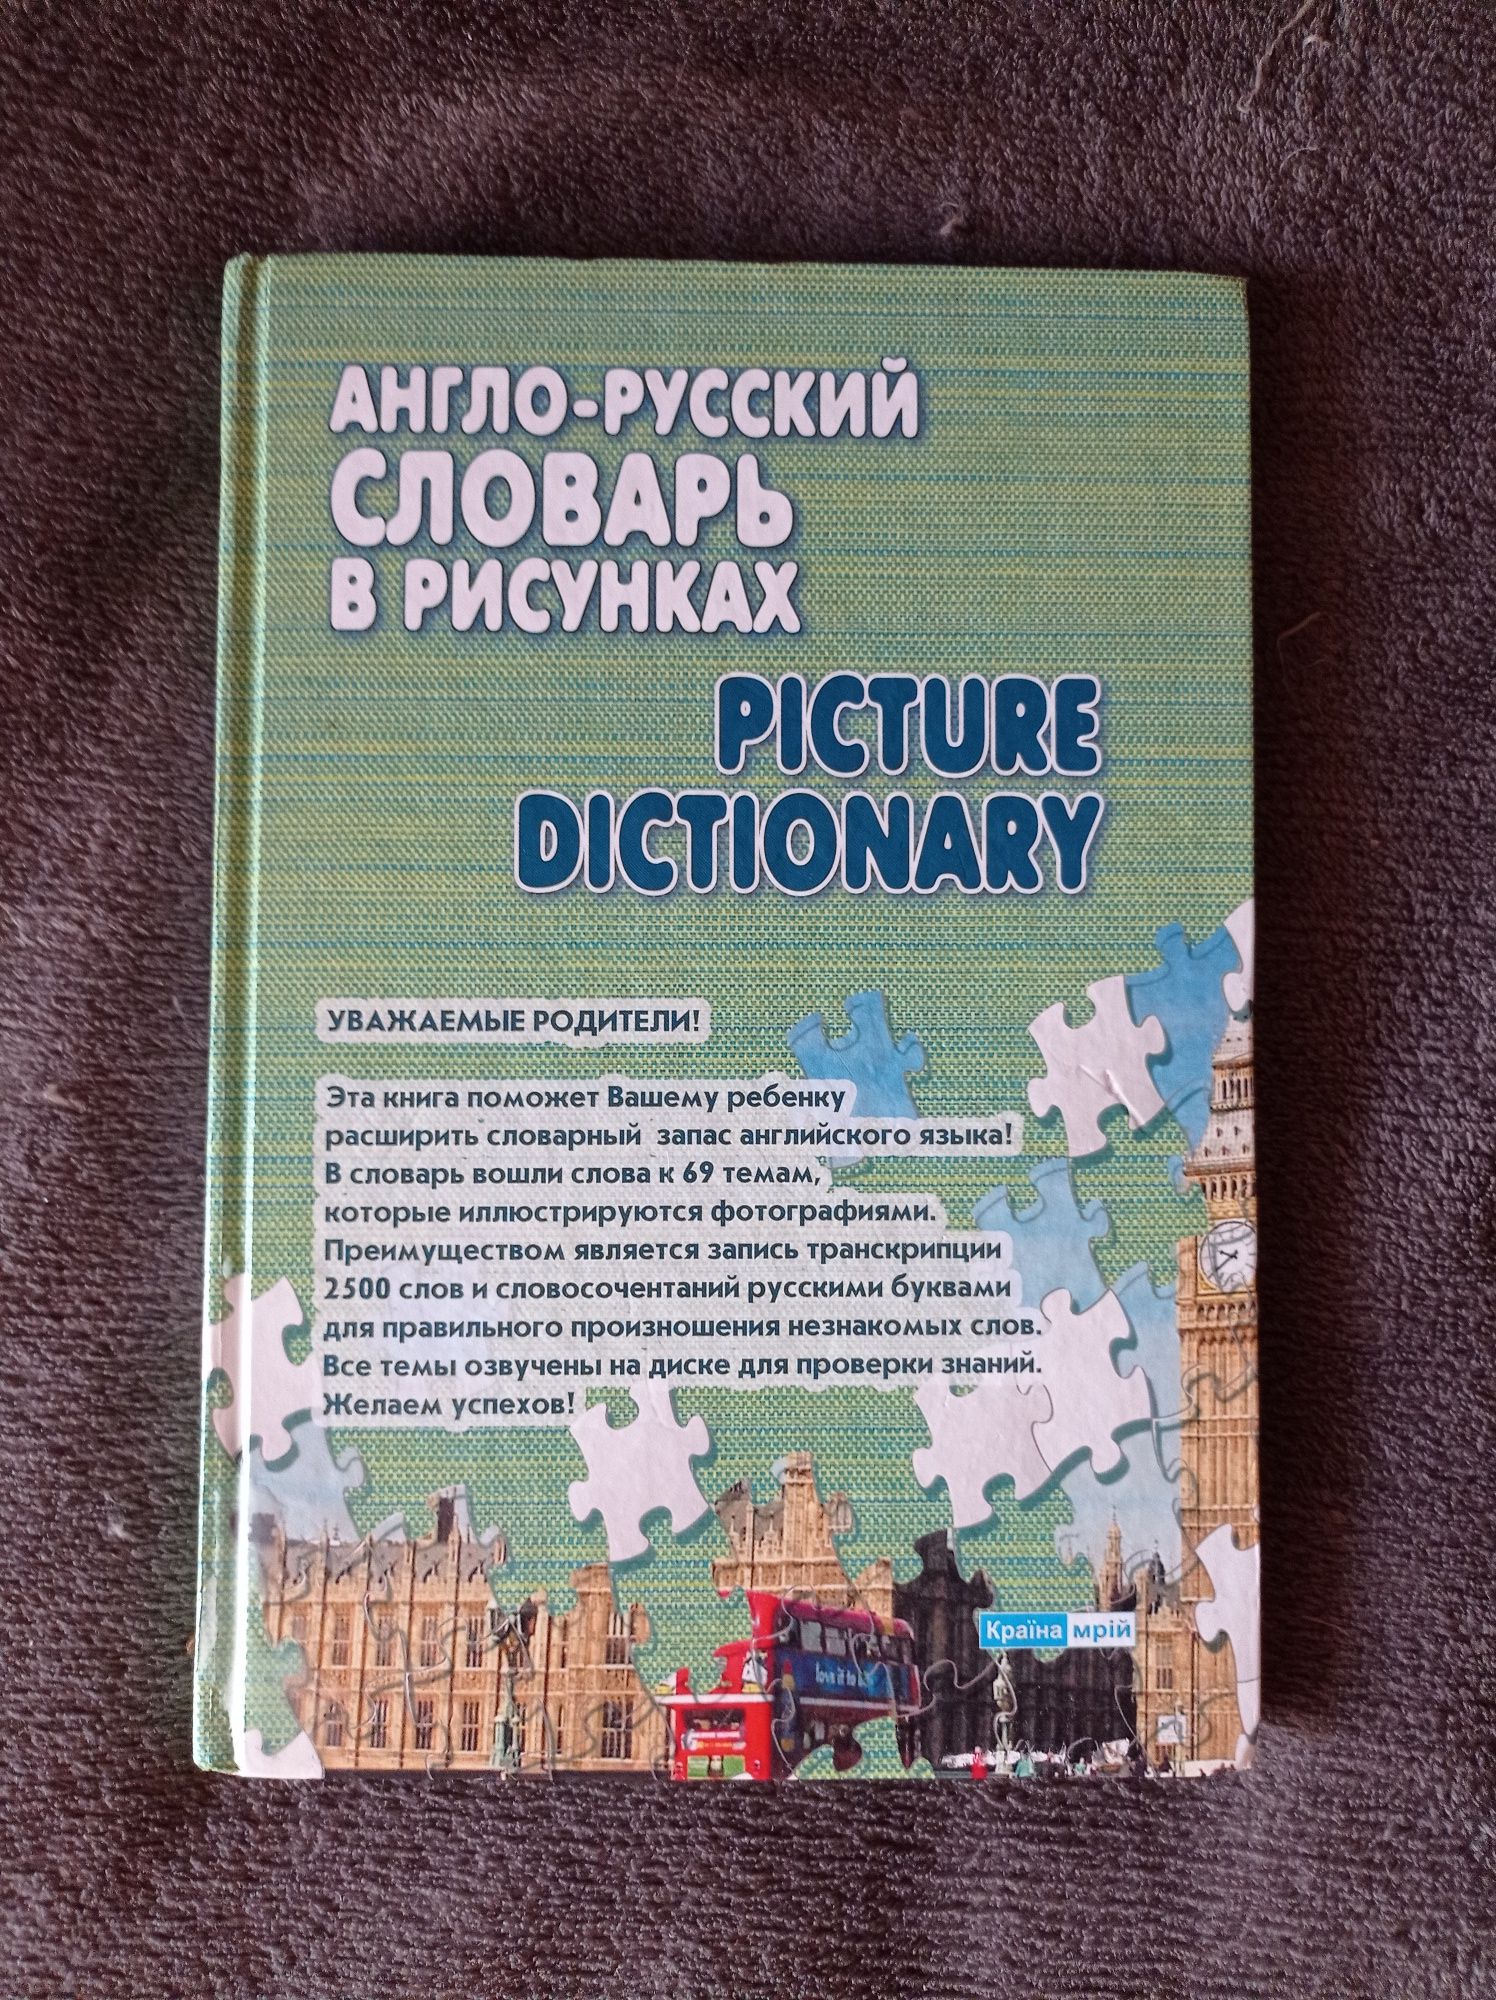 Книга: "Англо-русский словарь"